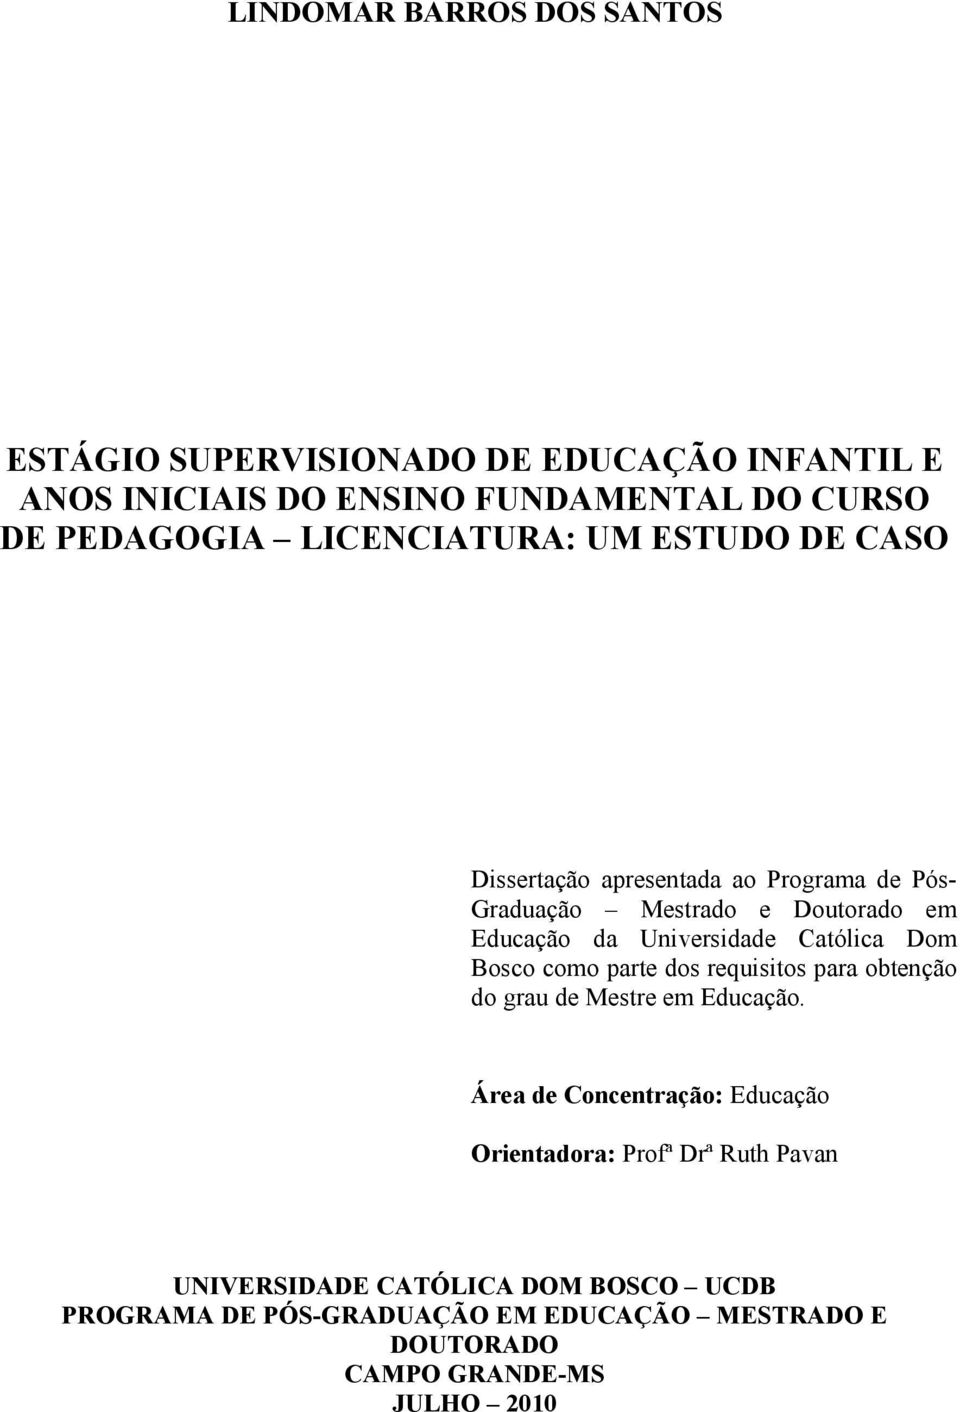 Católica Dom Bosco como parte dos requisitos para obtenção do grau de Mestre em Educação.